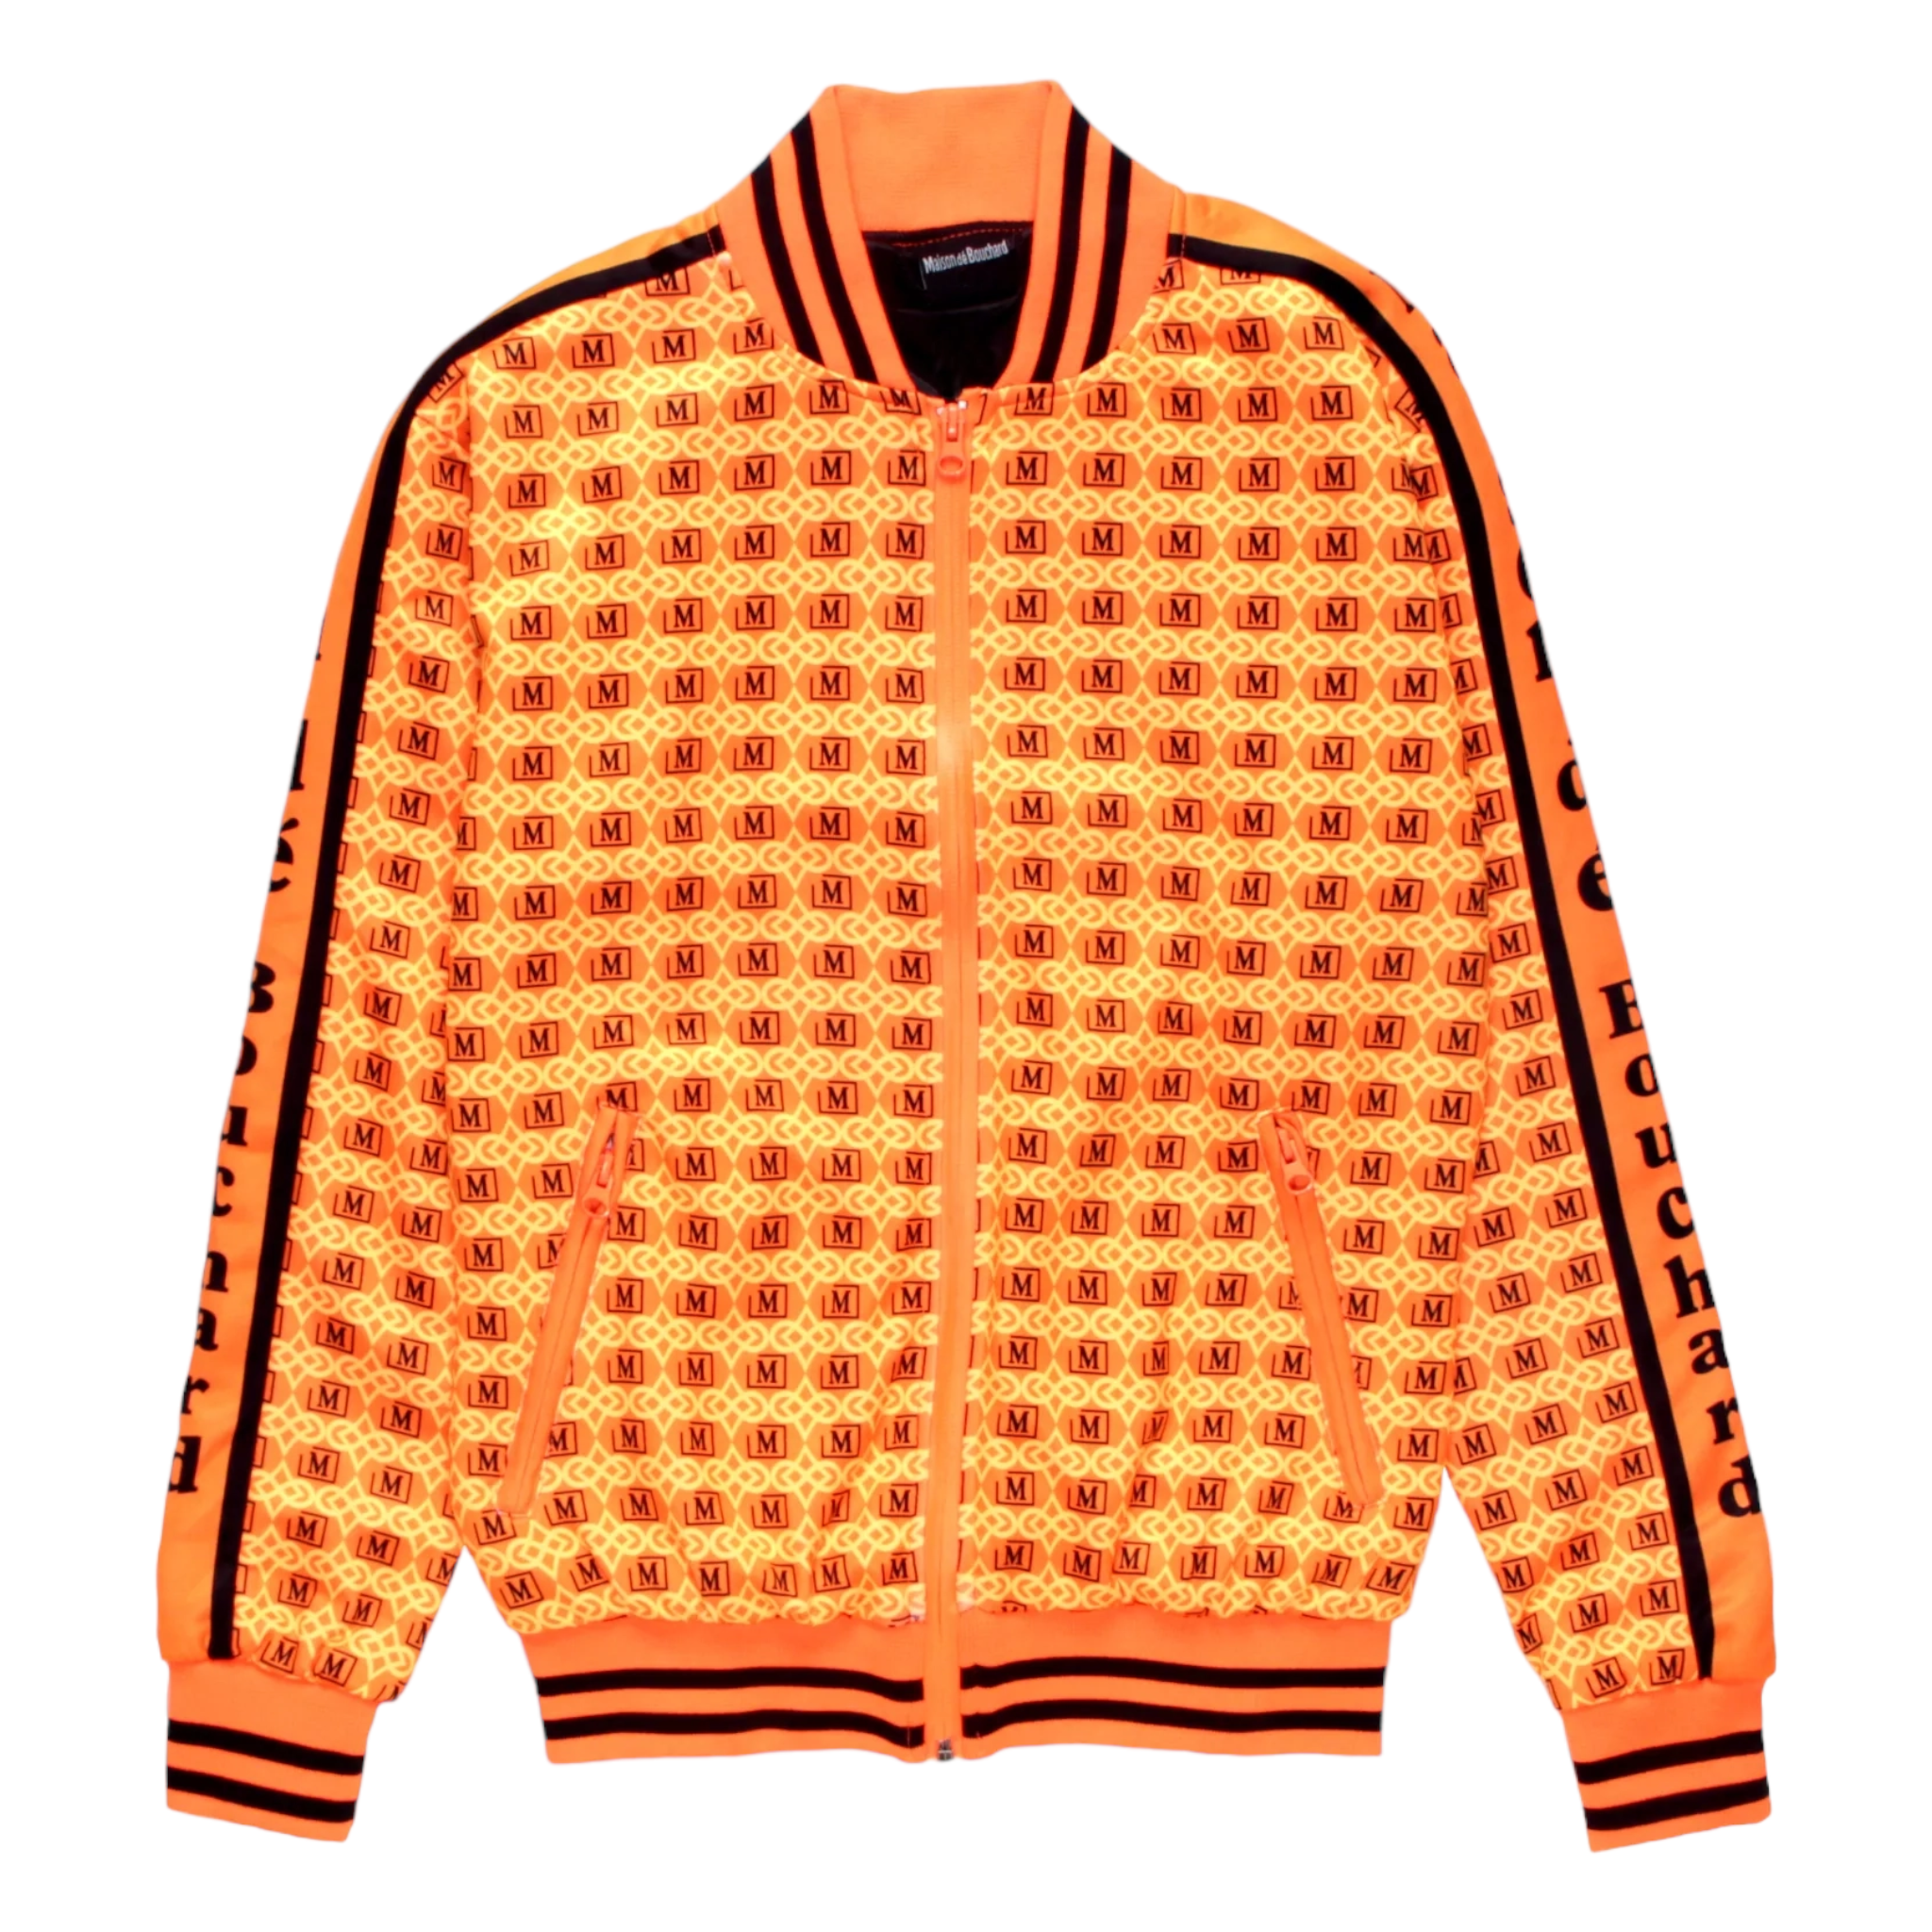 LOUIS VUITTON Monogram Bandana Windbreaker Orange. Size 50